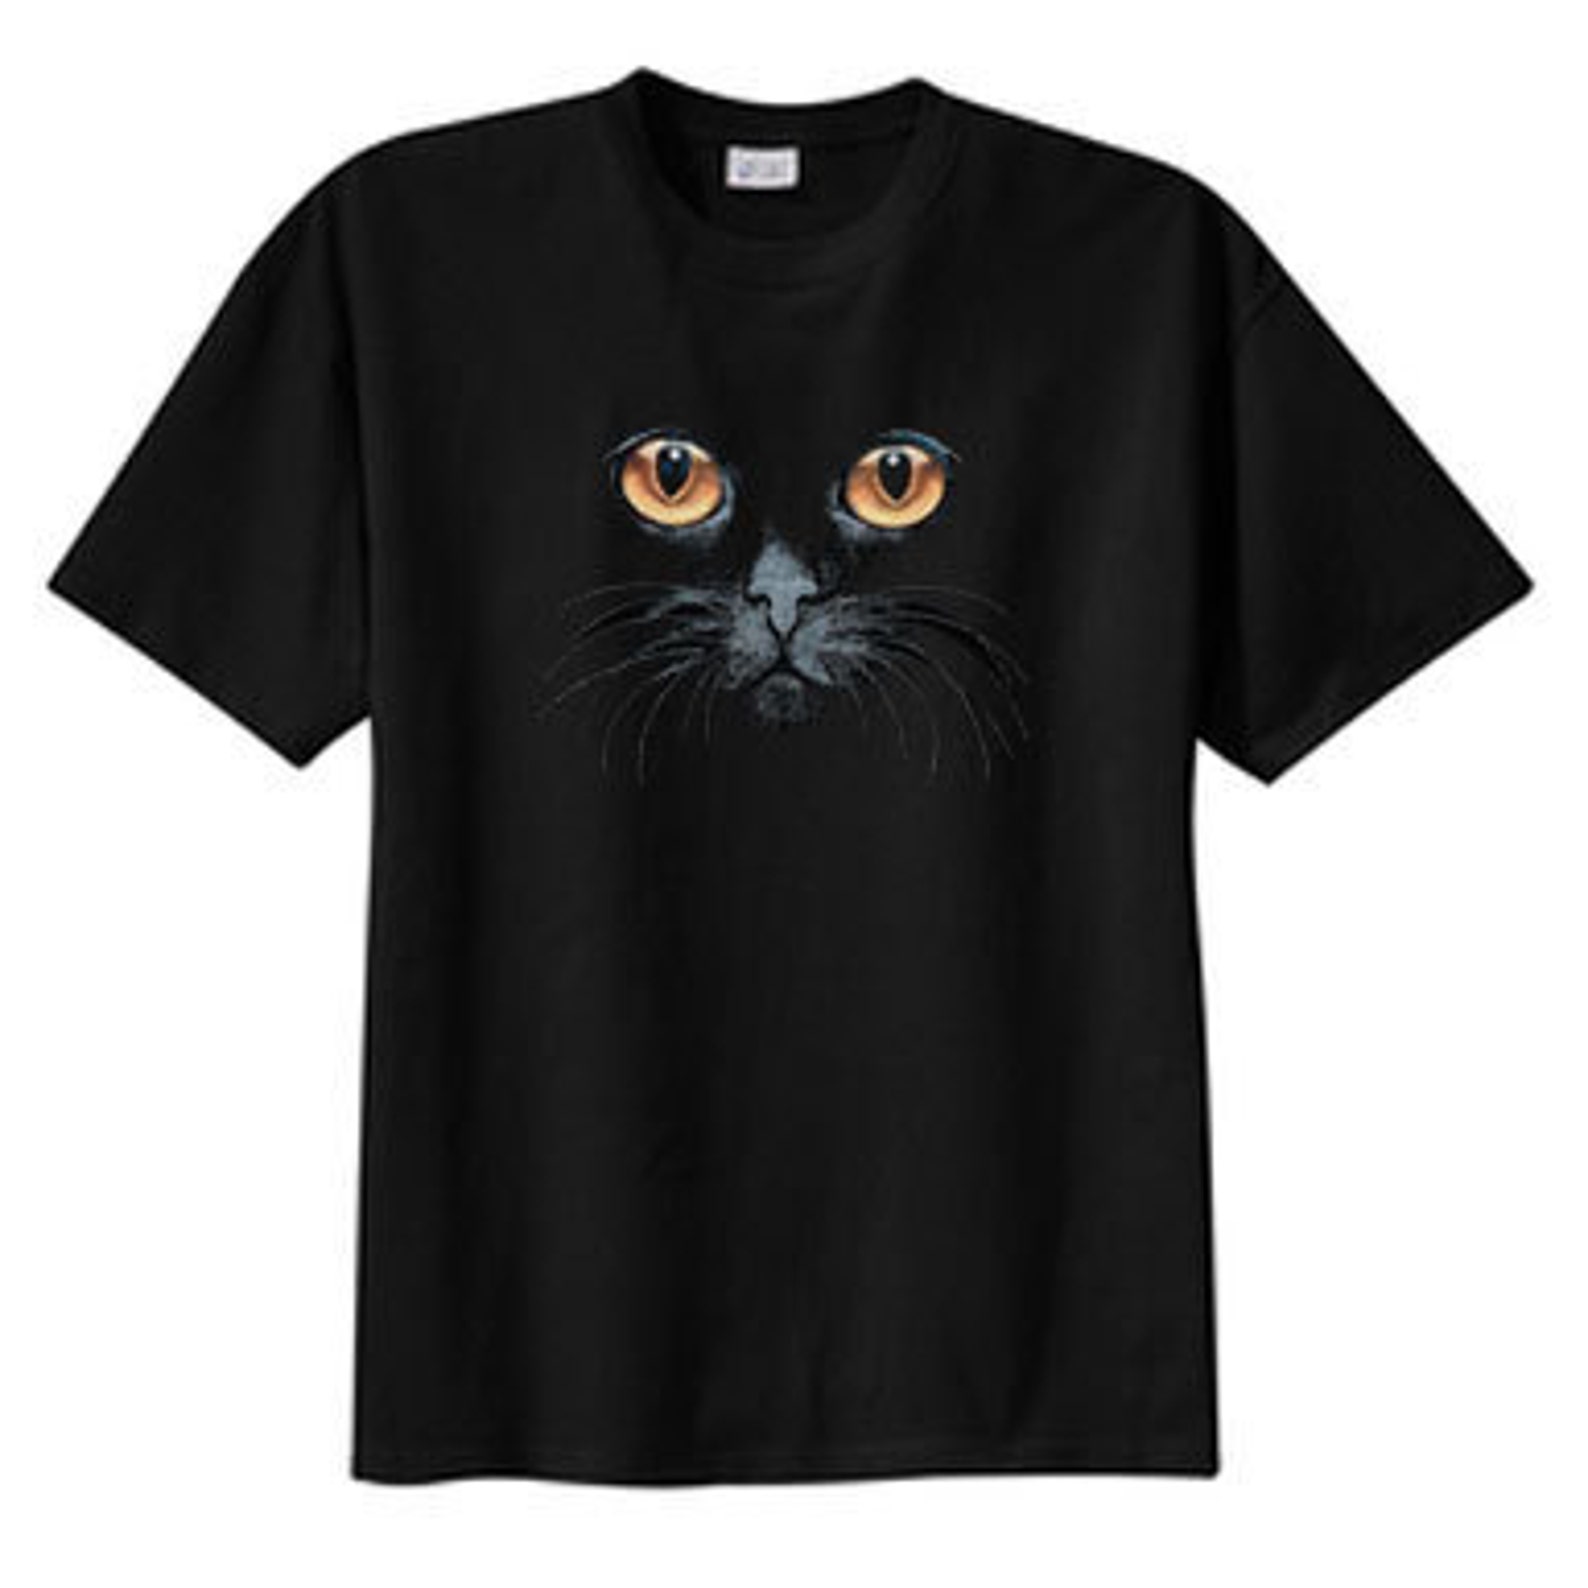 Black Cat Yellow Eyes New T Shirt s m l xl 2x 3x 4x 5x | Etsy